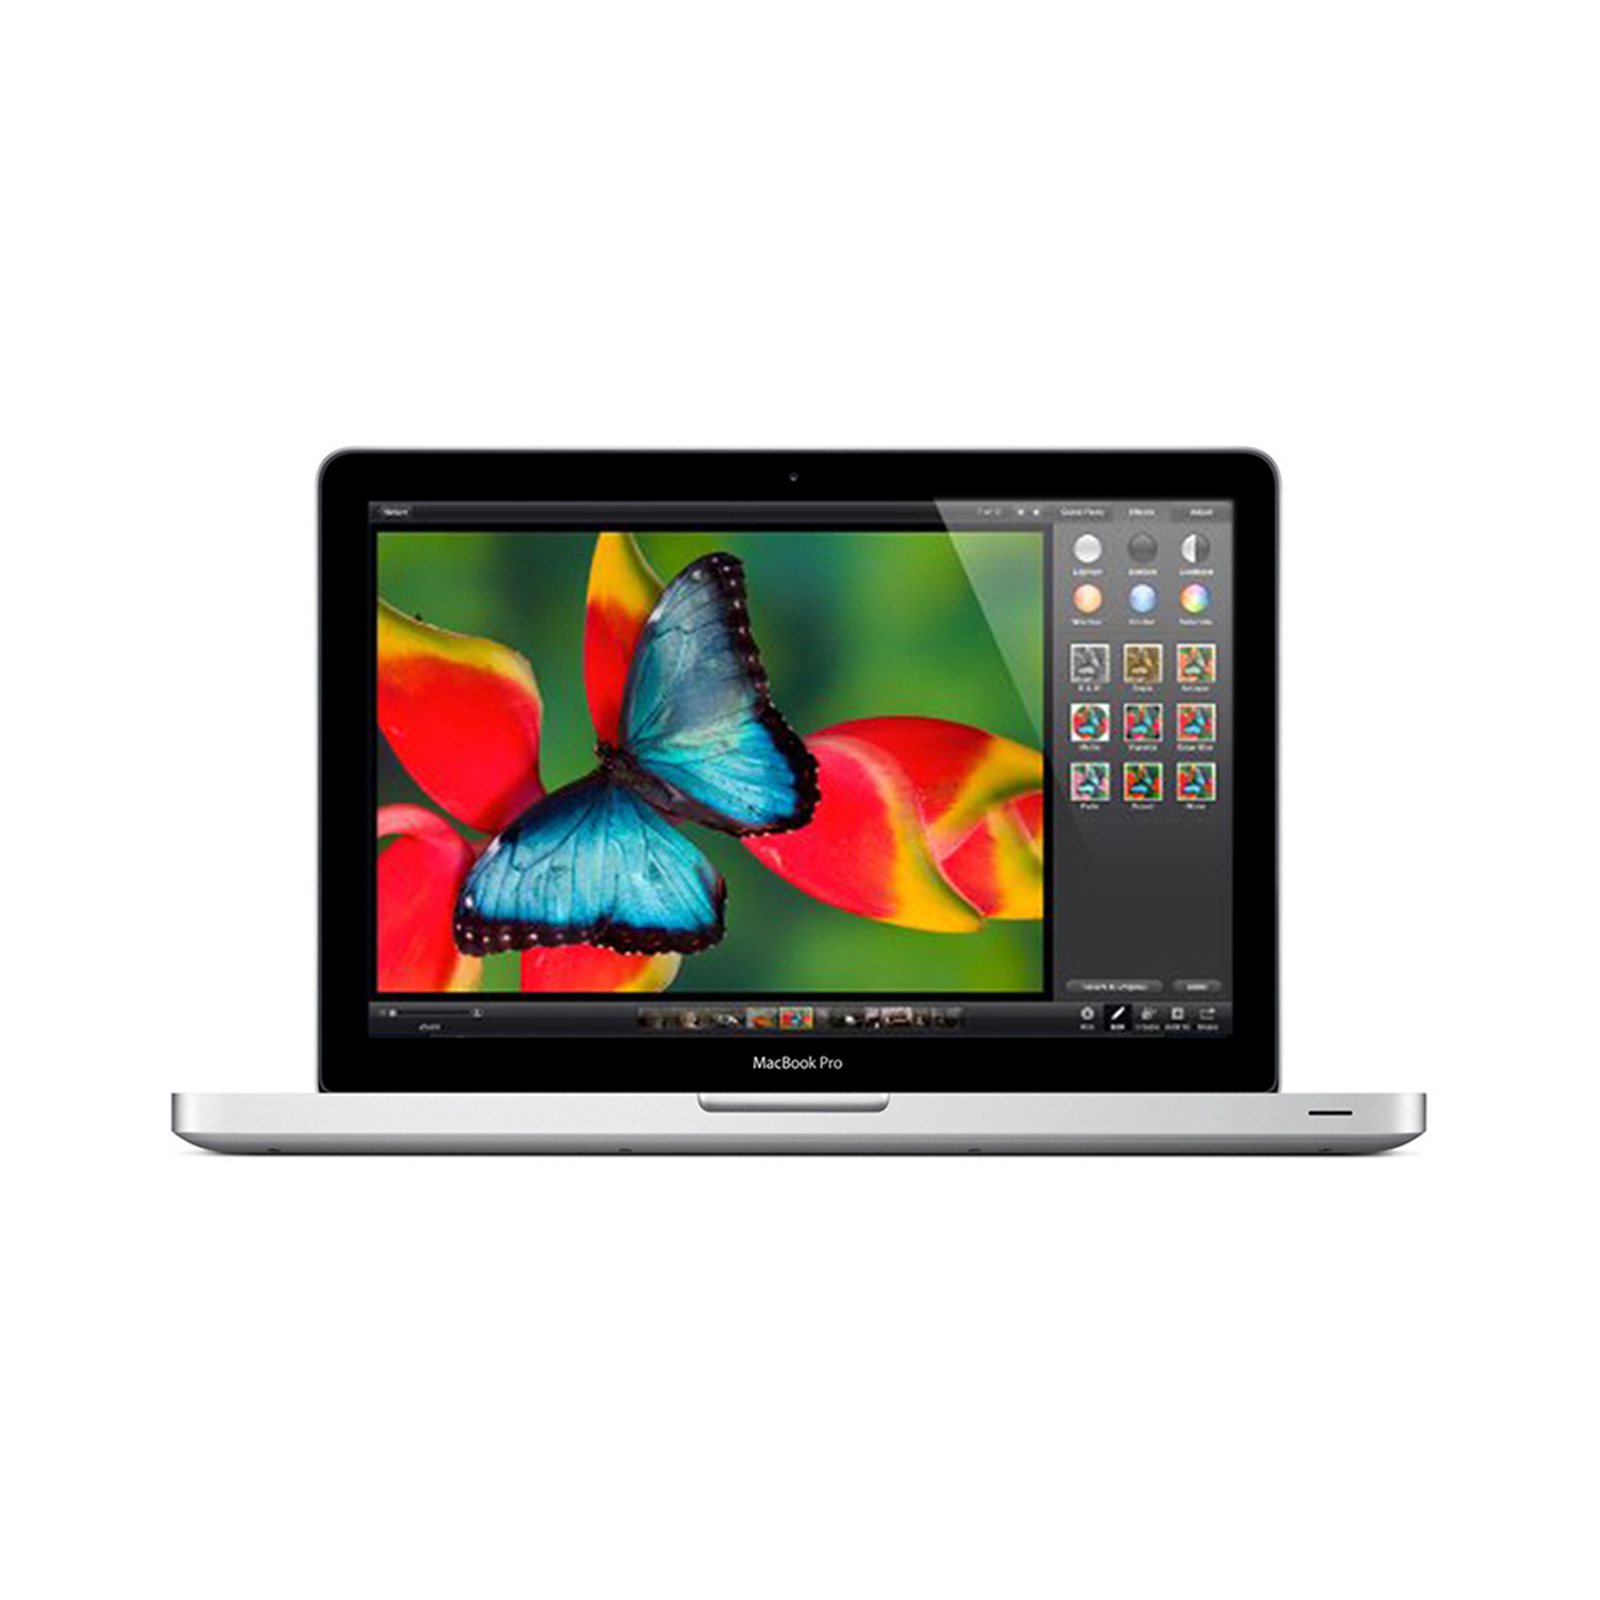 Macbook Pro 15" Mid 2012 - Core i7 2.3Ghz / 4GB RAM / 500GB HDD